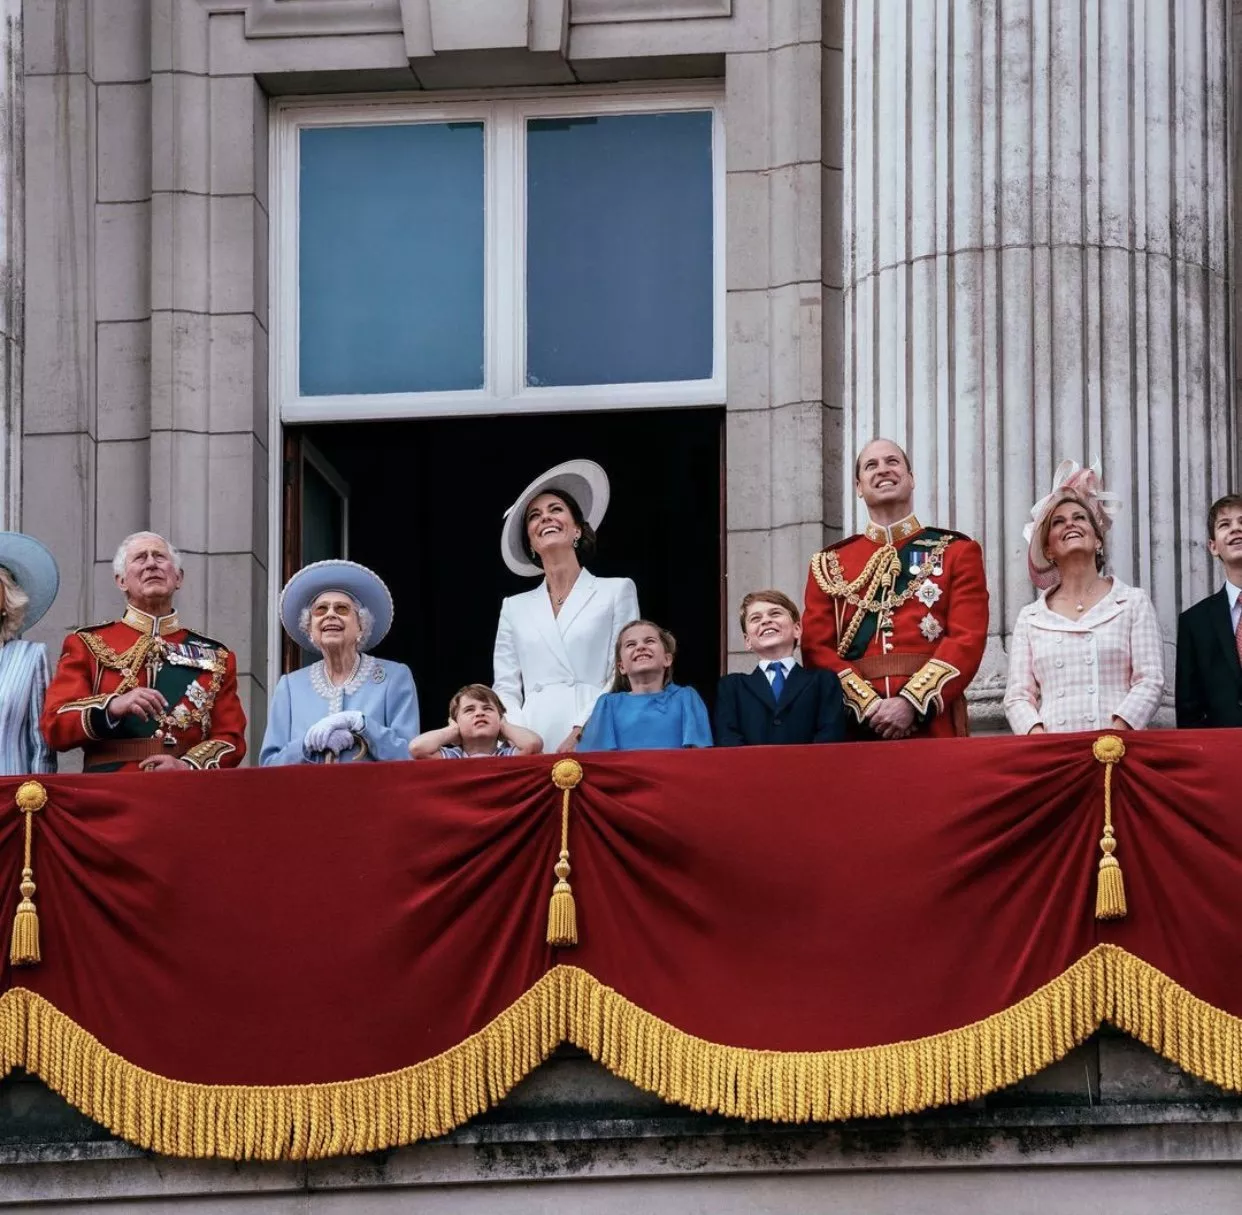 احتفالات اليوبيل البلاتيني للملكة اليزابيث تُختتم بحضورها! استرجعي أبرز فعاليات هذا الحدث